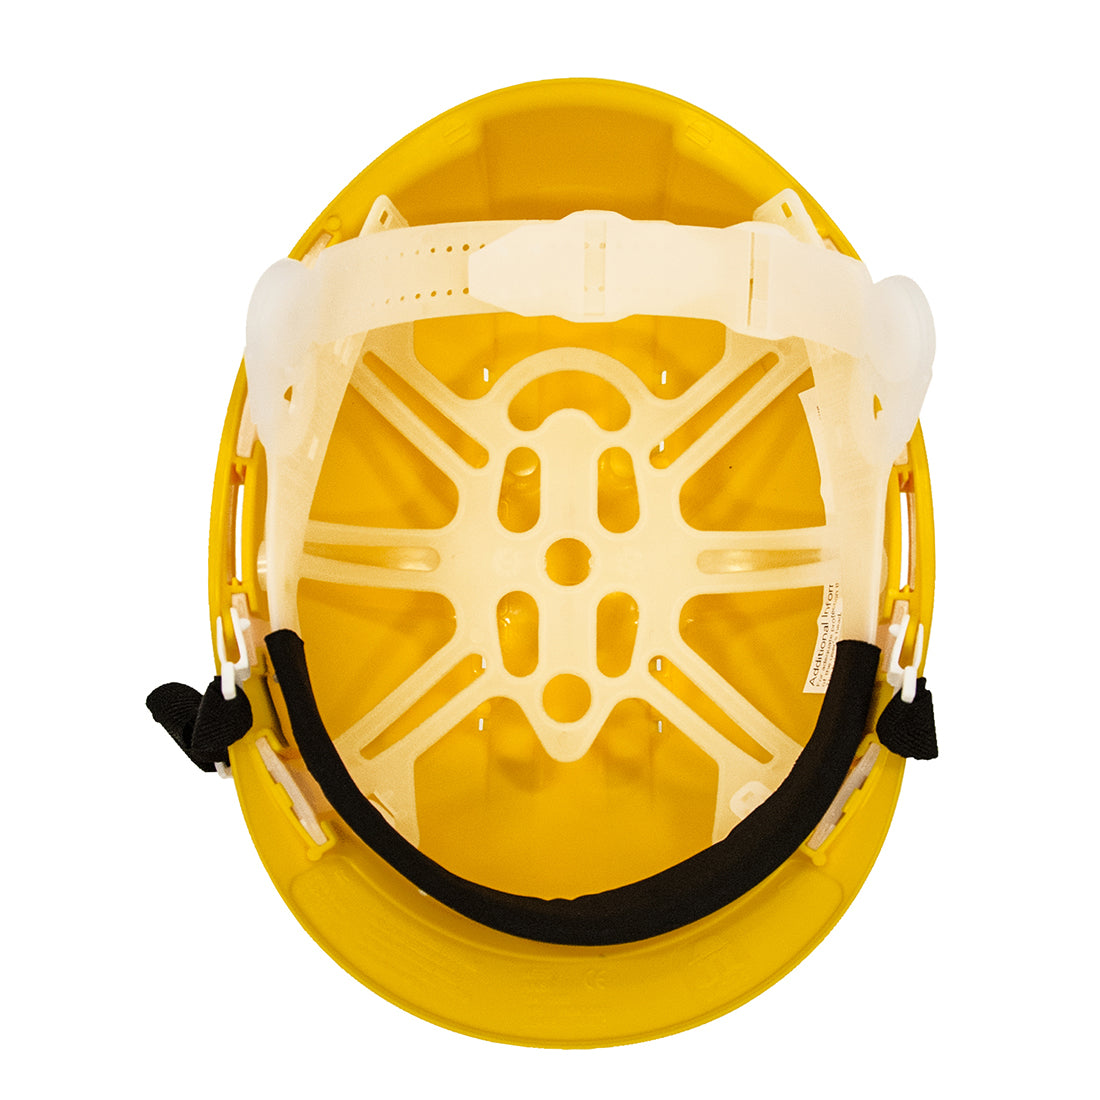 Portwest workwear PW97 - Monterosa Safety Helmet